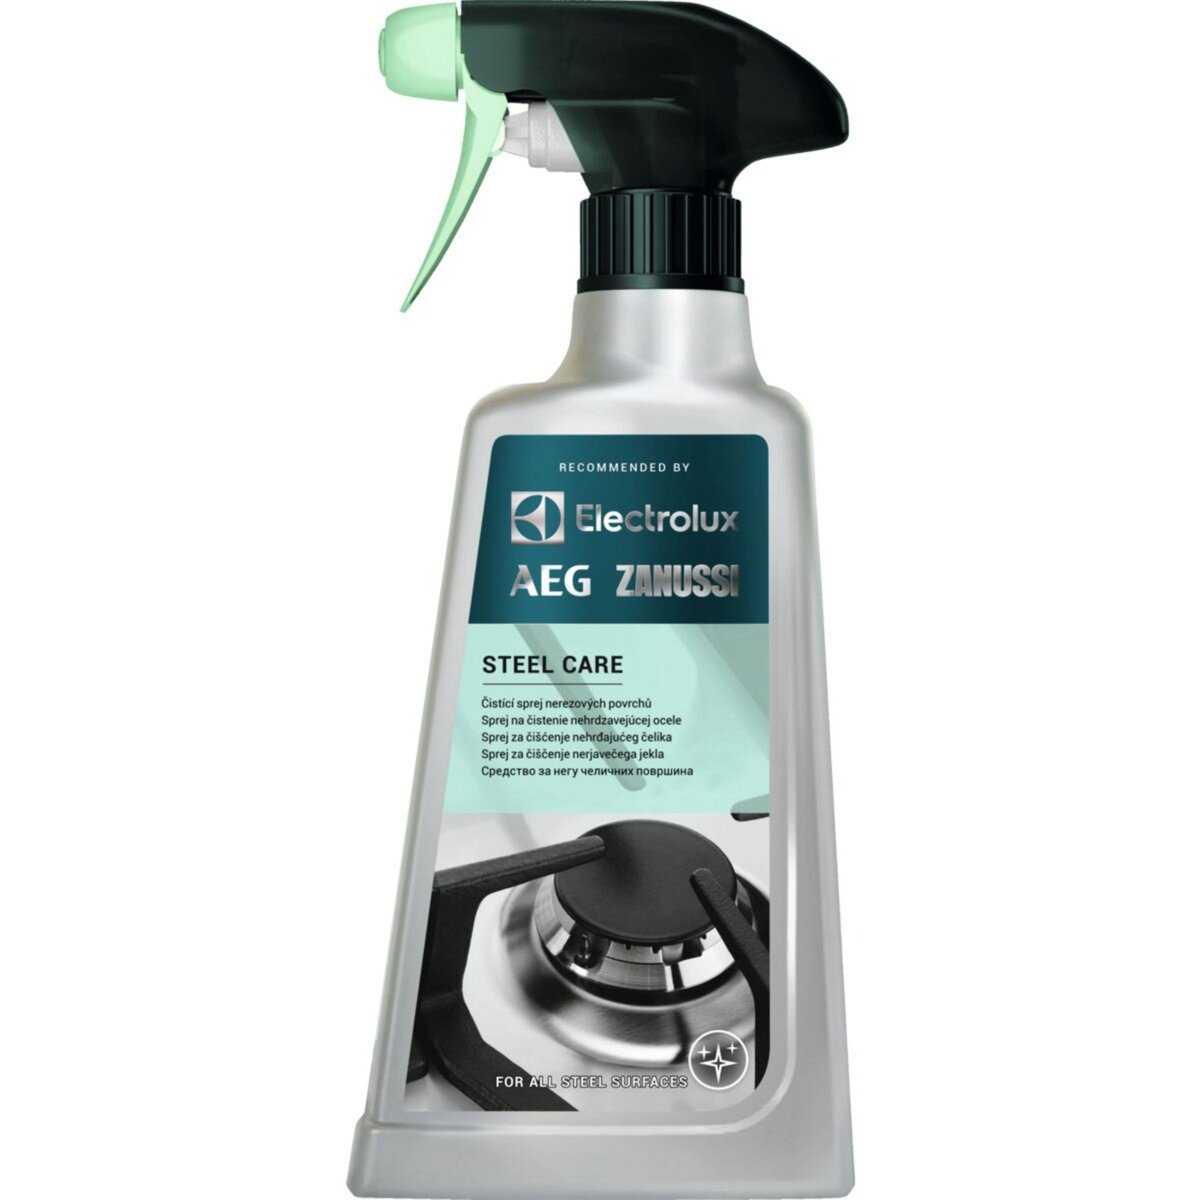 Spray nettoyant et protecteur professionnel : spécial Inox